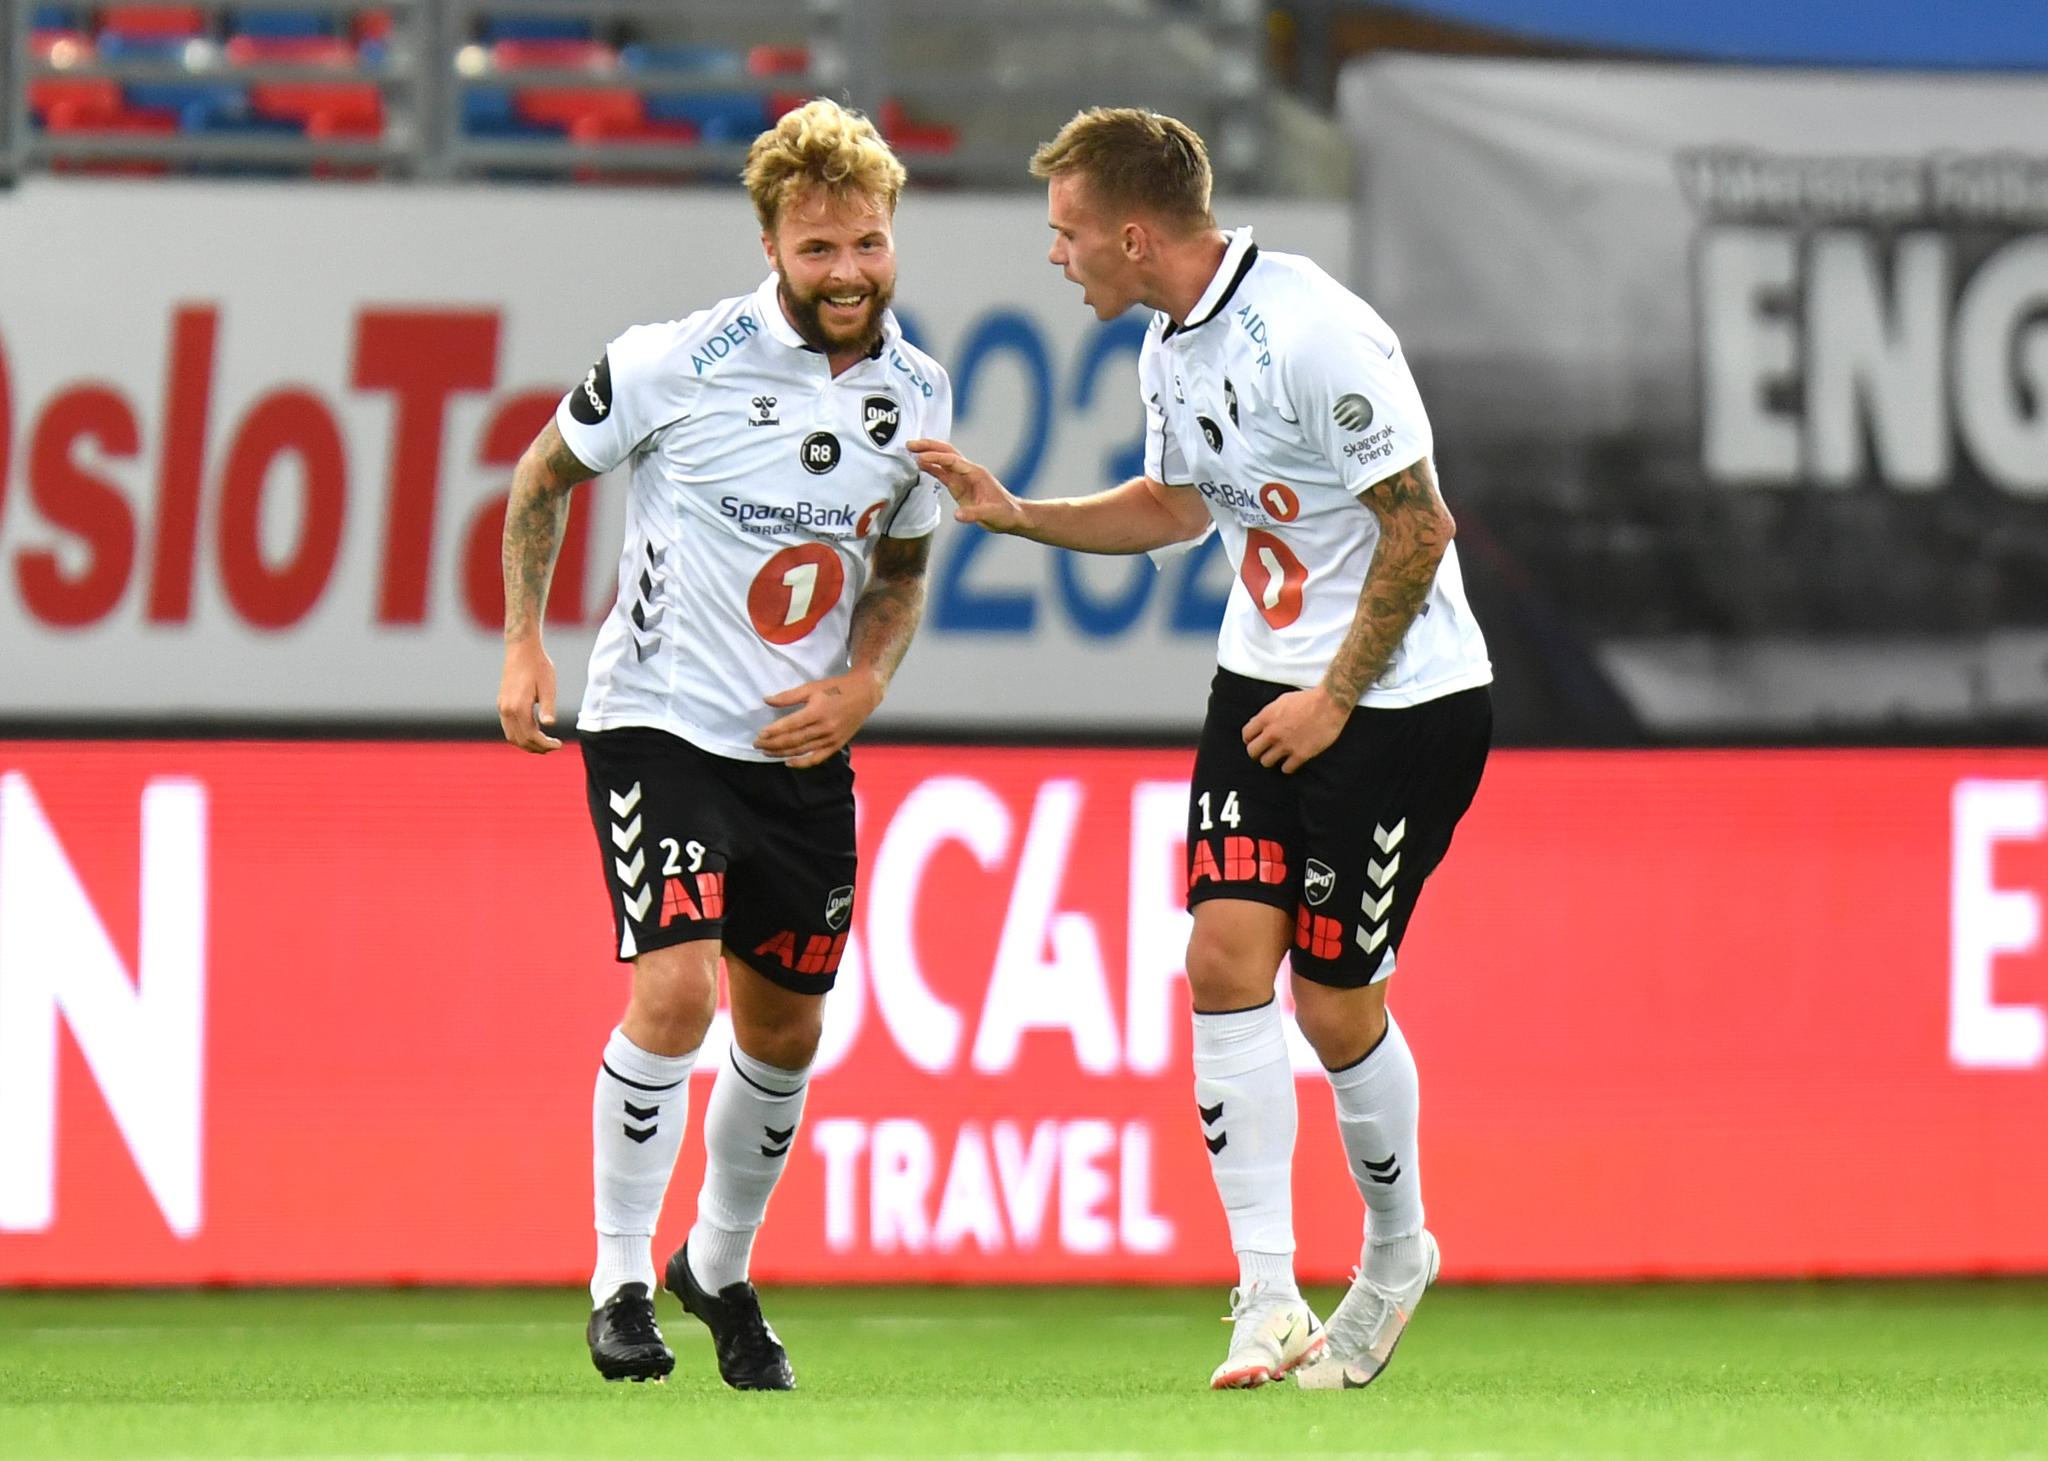 NYTER LIVET: Sander Svendsen smilte for scoring i cupkampen mot Vålerenga sammen med lagkamerat Conrad Wallem onsdag kveld.